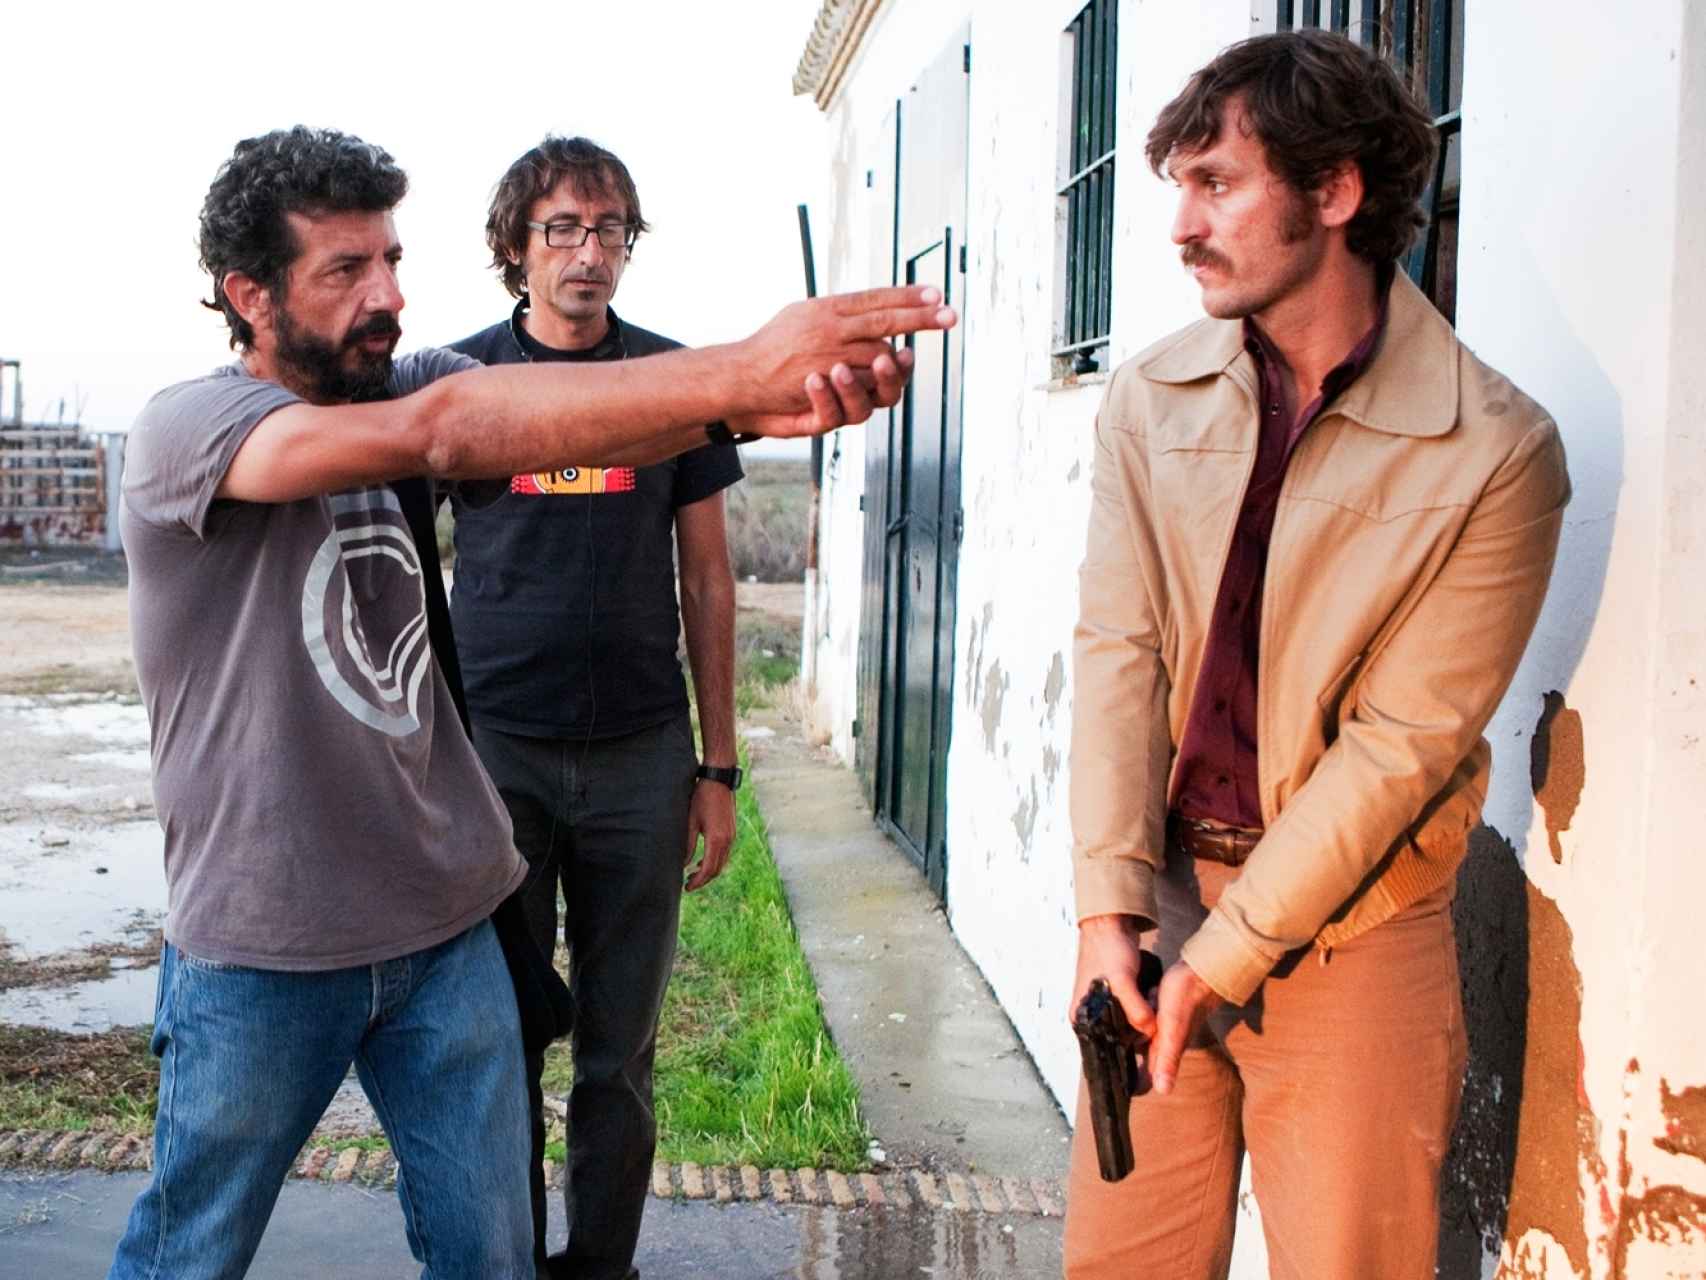 Rodaje de La isla mínima, una de las películas más exitosas de 2014 en el extranjero.